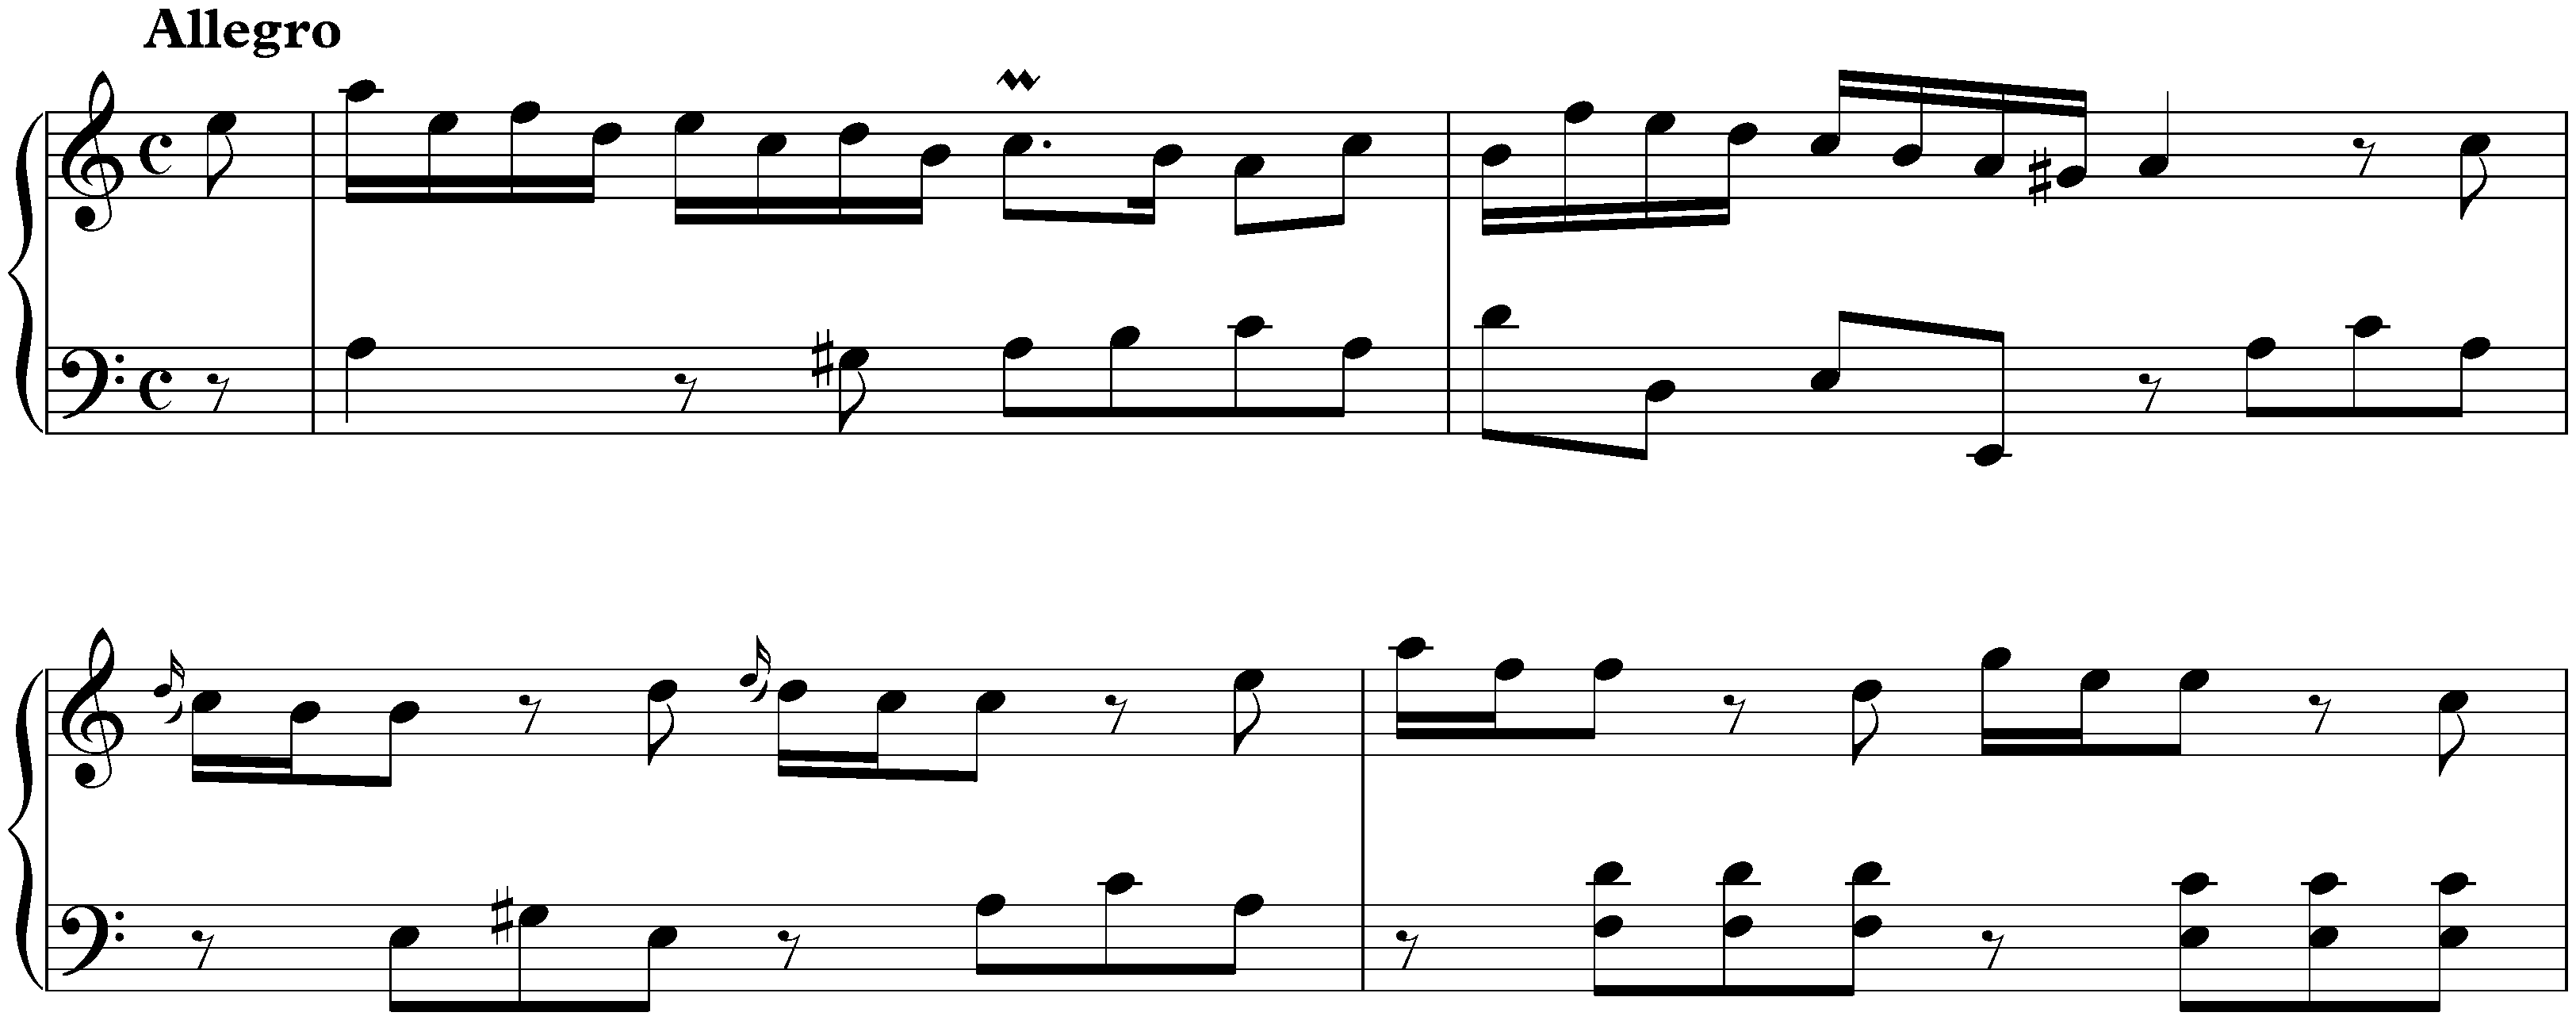 Sonata in A minor, K. 149